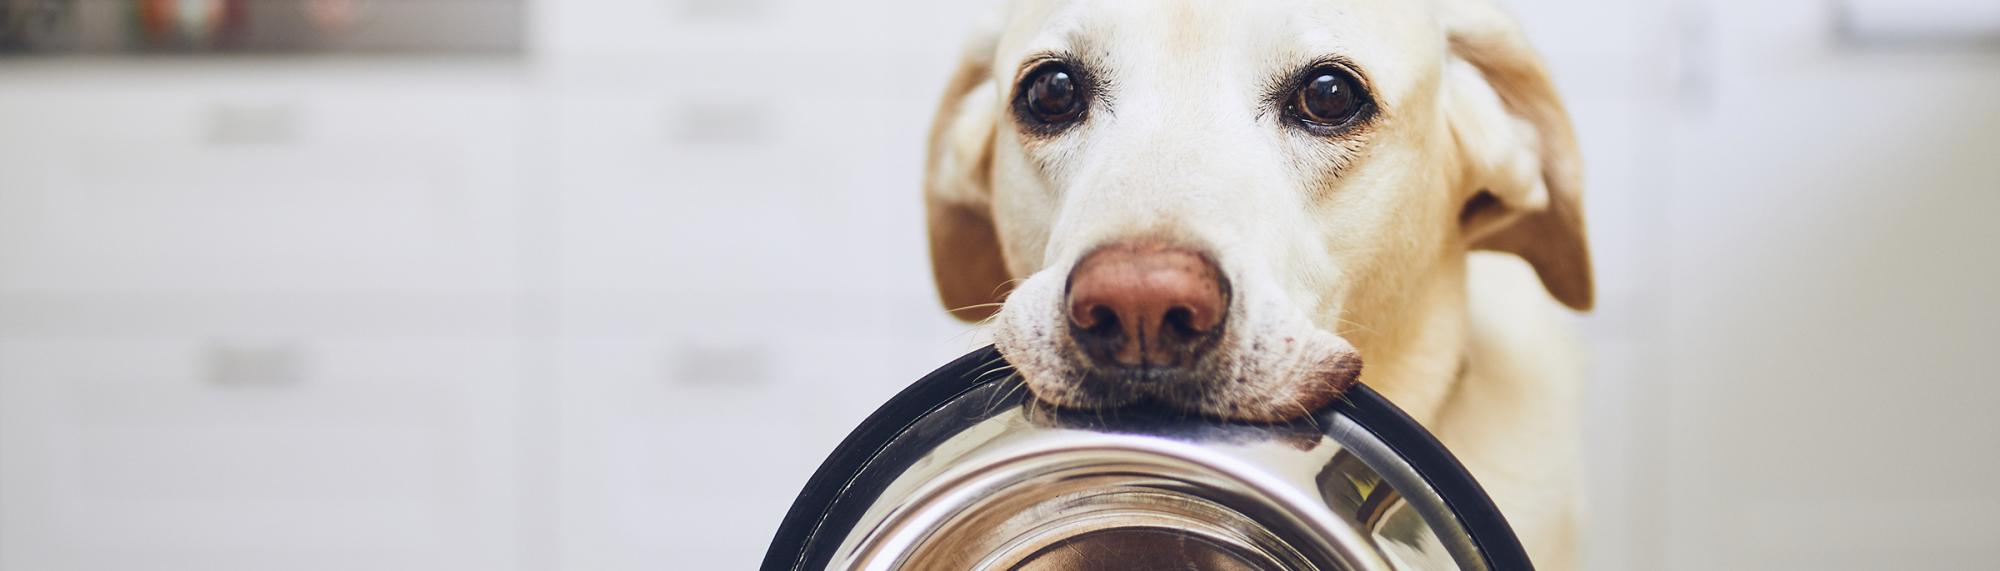 Informationen und Tipps zur richtigen Ernährung von Hunden